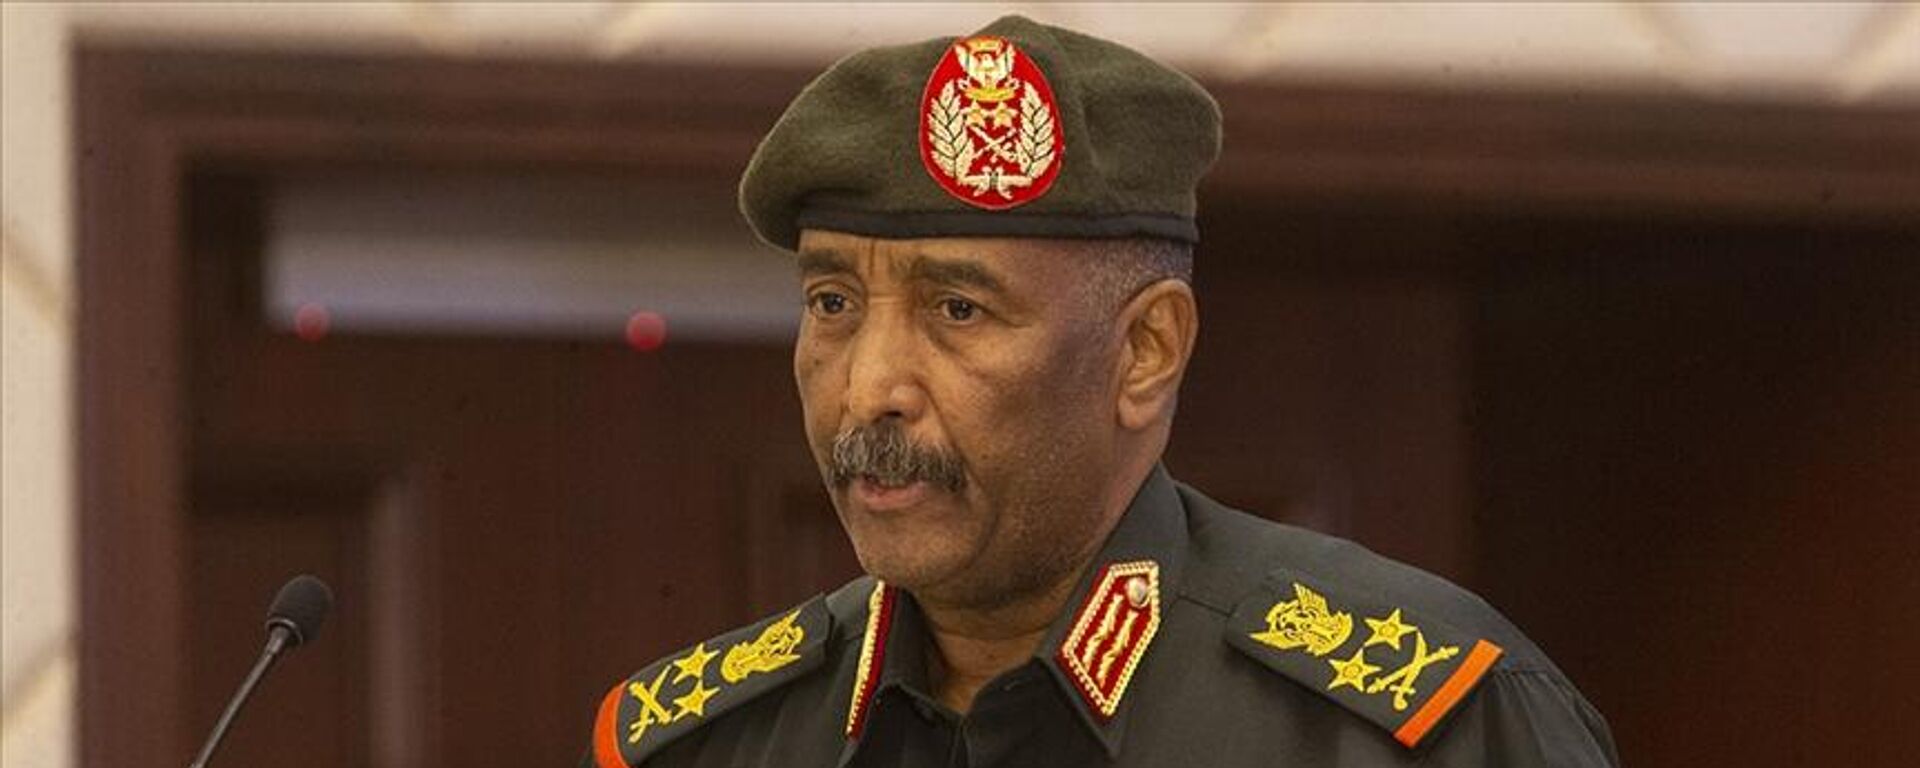 Sudan Egemenlik Konseyi Başkanı ve Ordu Komutanı Orgeneral Abdulfettah El Burhan, askerin siyaset arenasından çekilmeye kararlı olduğunu ve silahlı kuvvetlerin seçimlerle gelen sivil otoriteye tabi olacağına inandıklarını söyledi. - Sputnik Türkiye, 1920, 19.03.2023